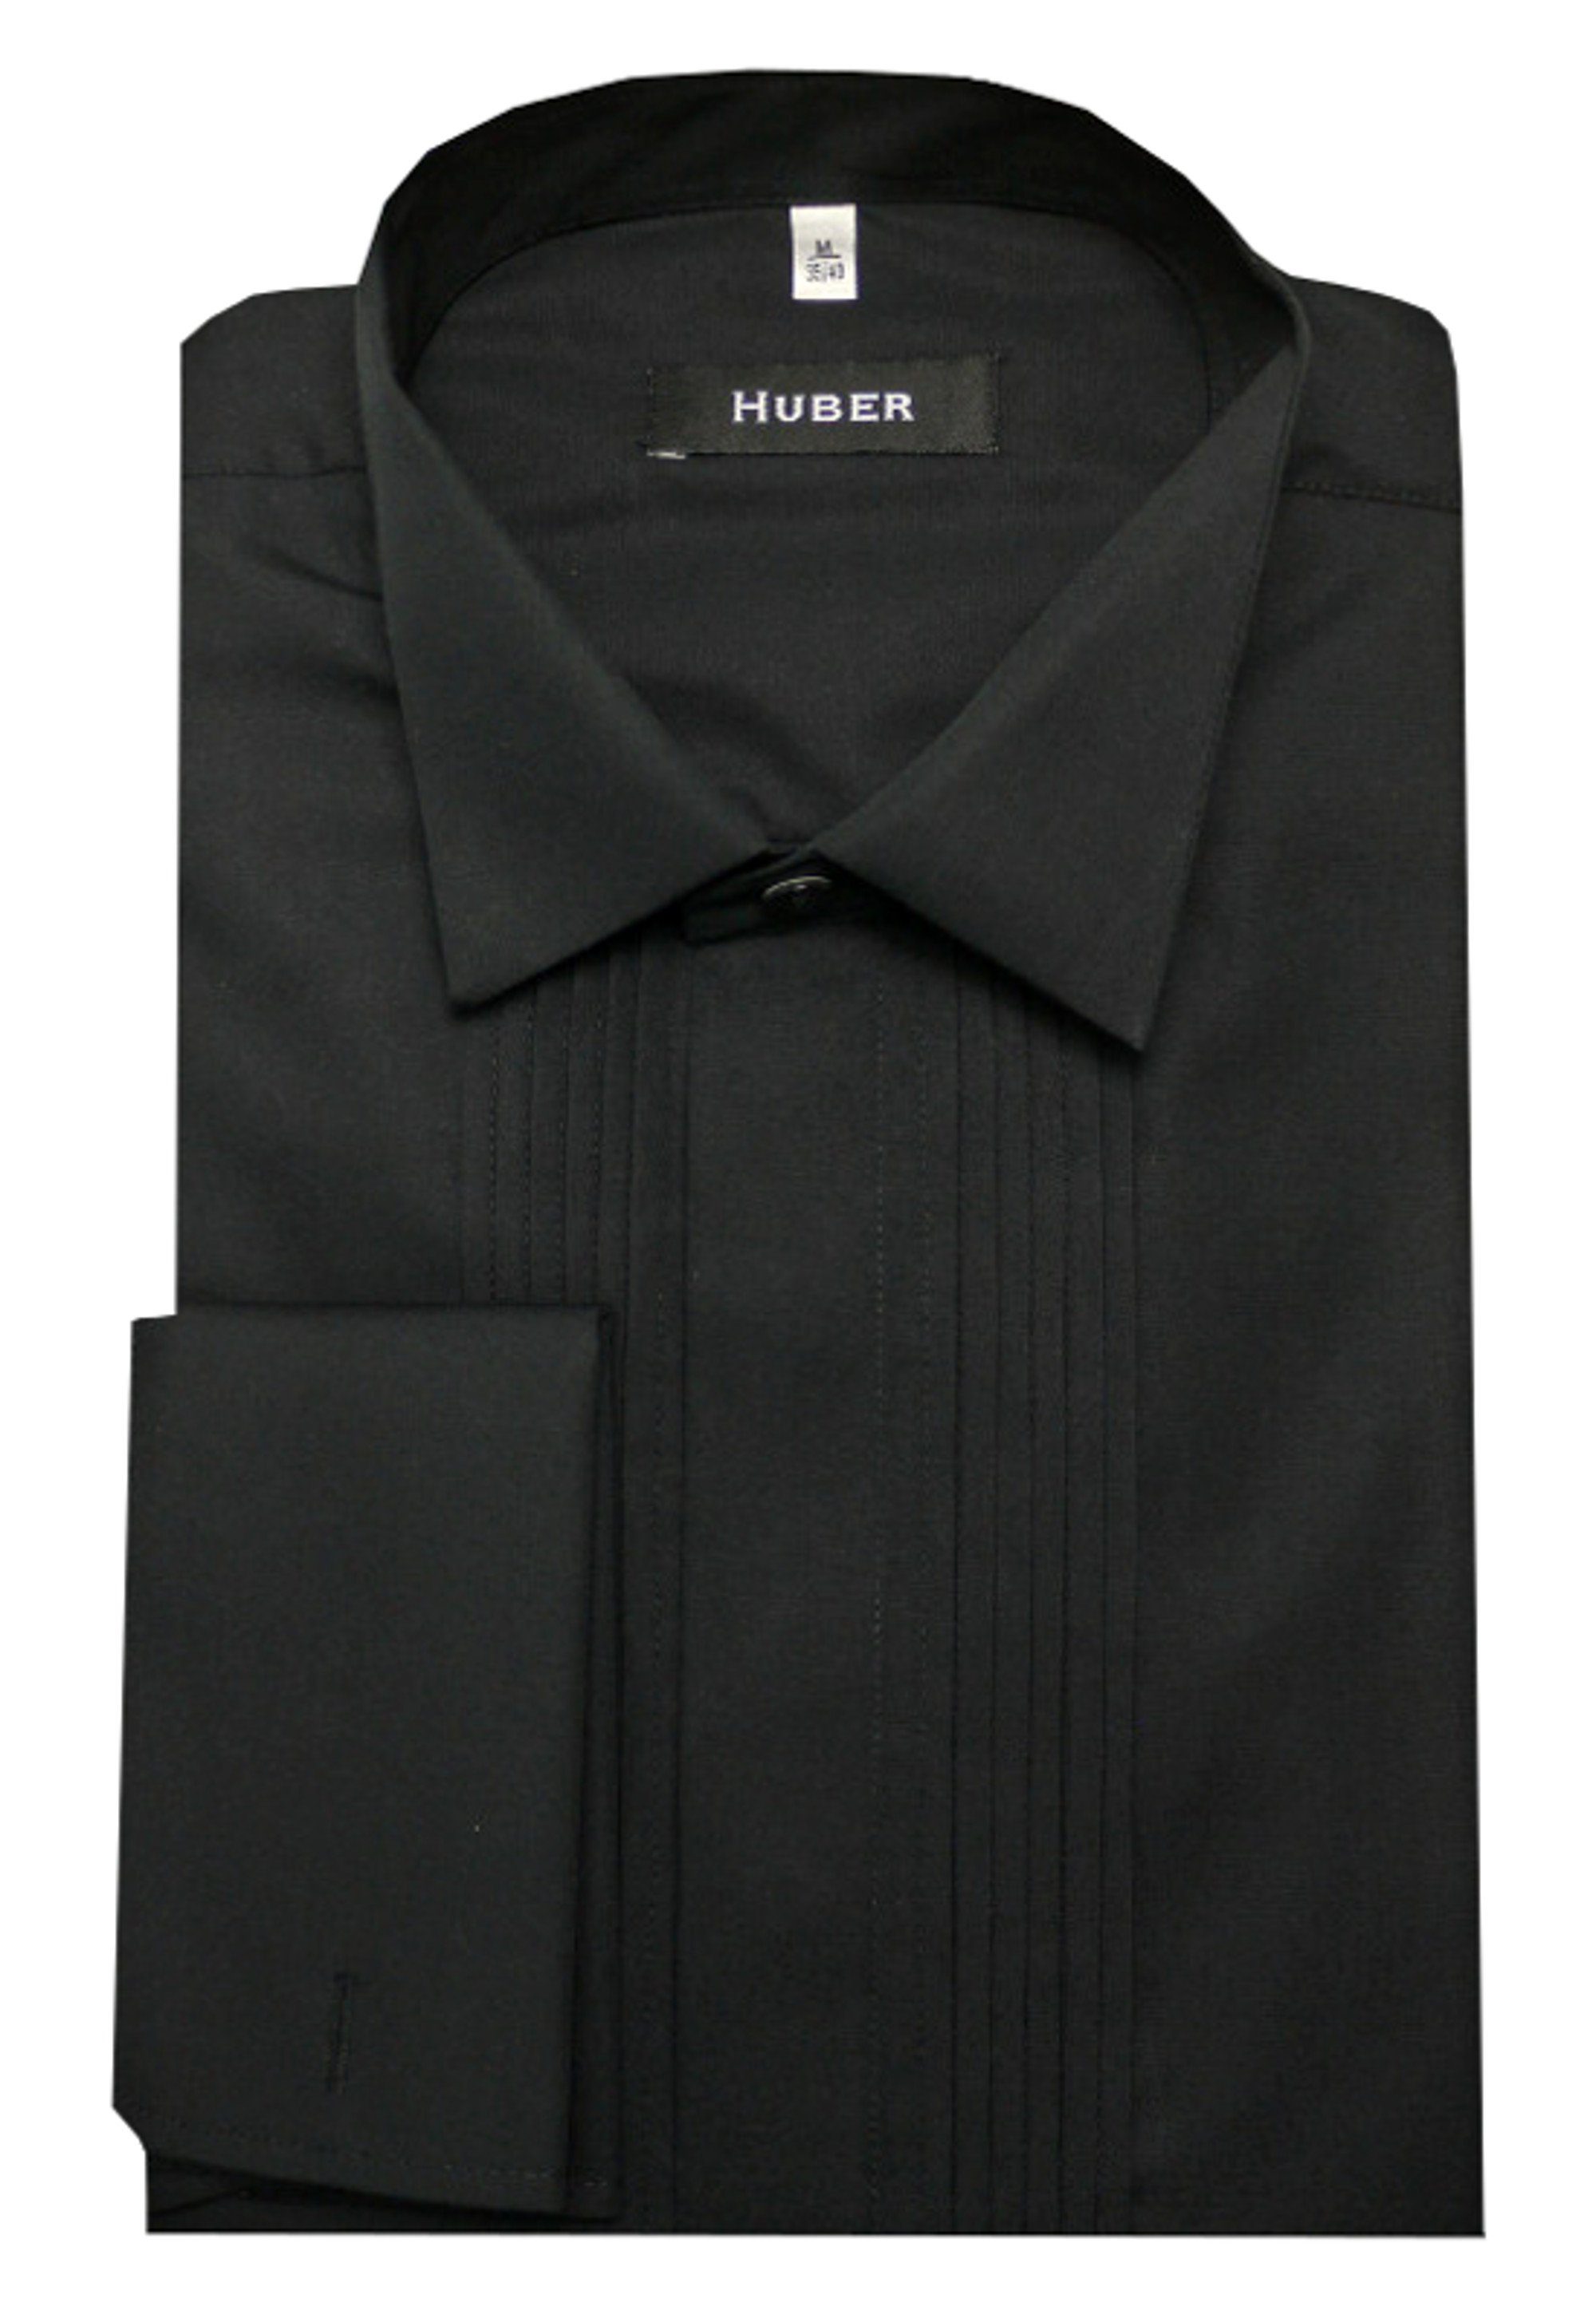 Huber Сорочки Smokinghemd HU-0171 Kläppchen-Kragen, Plissee, Umschlag-Manschette, Regular Fit